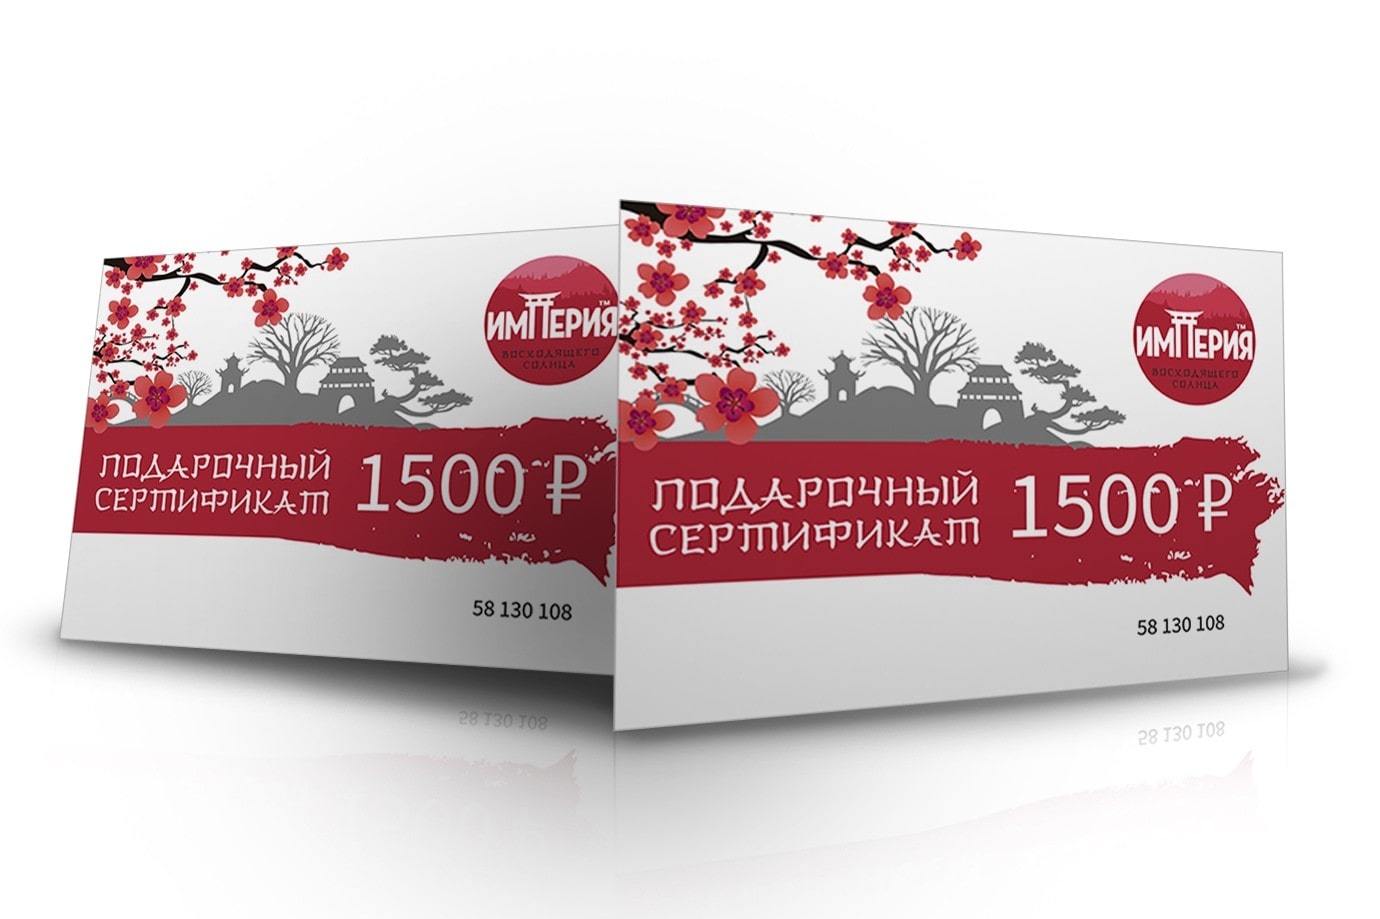 Заказать Сертификат на 1500 р. с доставкой на дом в Новосибирске, Империя суши